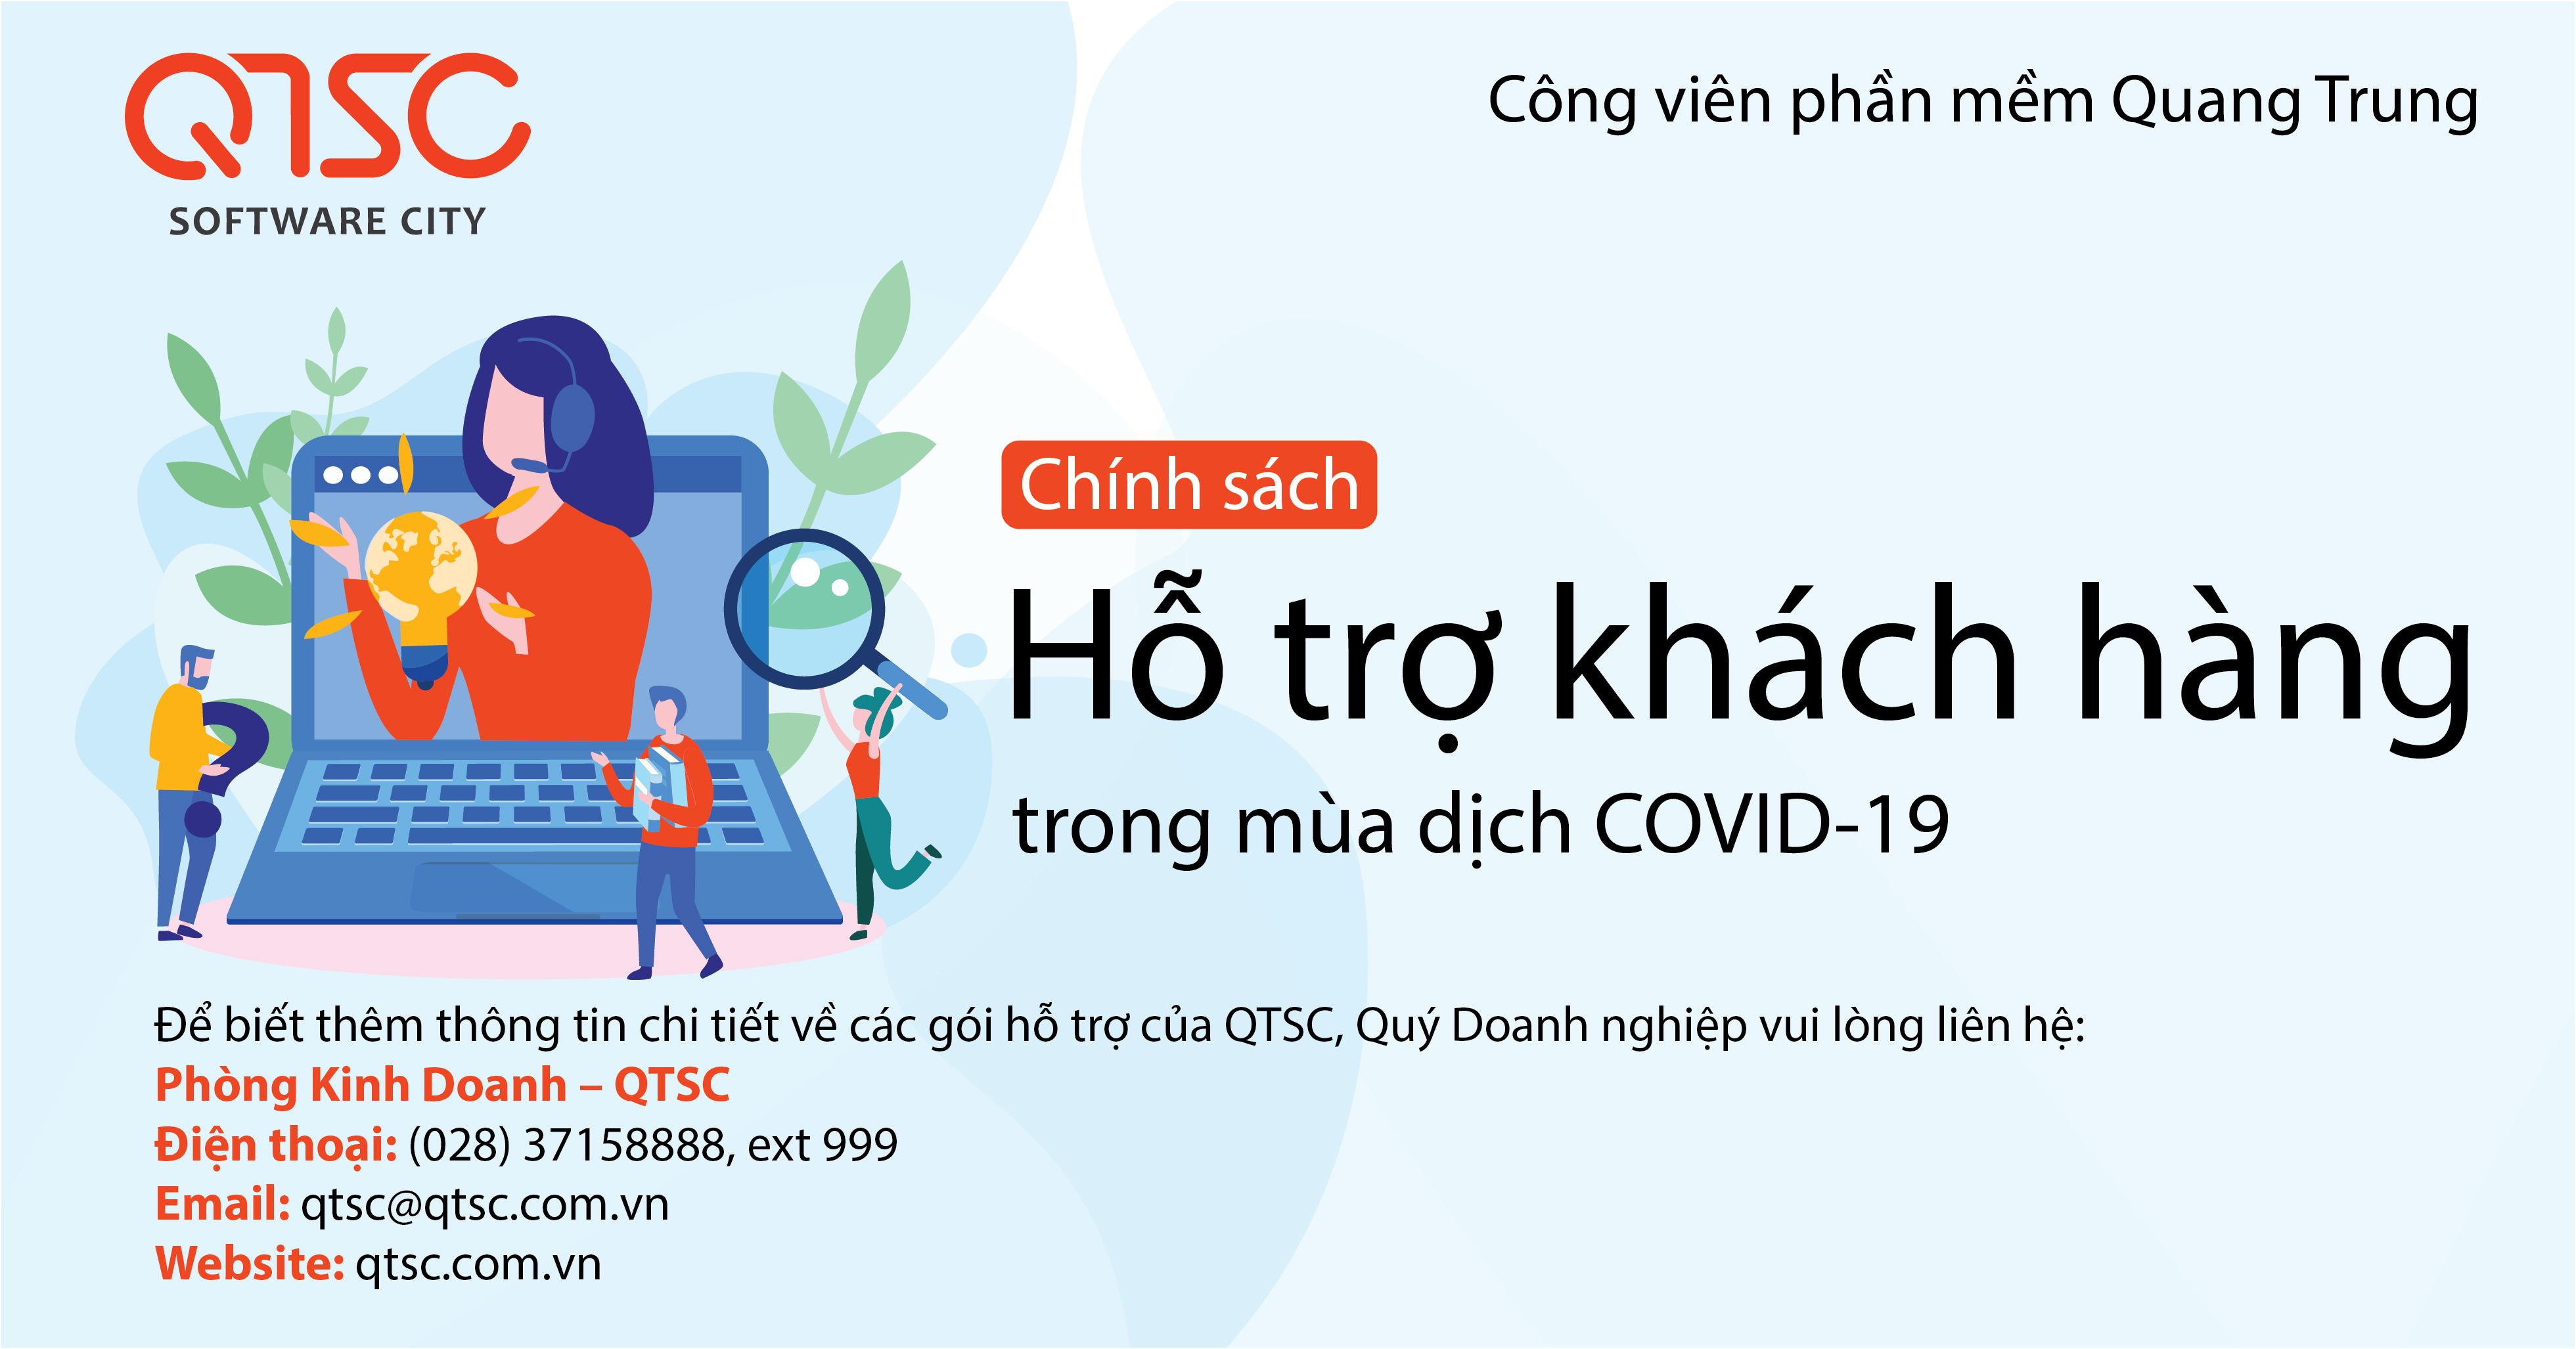 QTSC cung cấp gói hỗ trợ khách hàng mùa dịch COVID-19